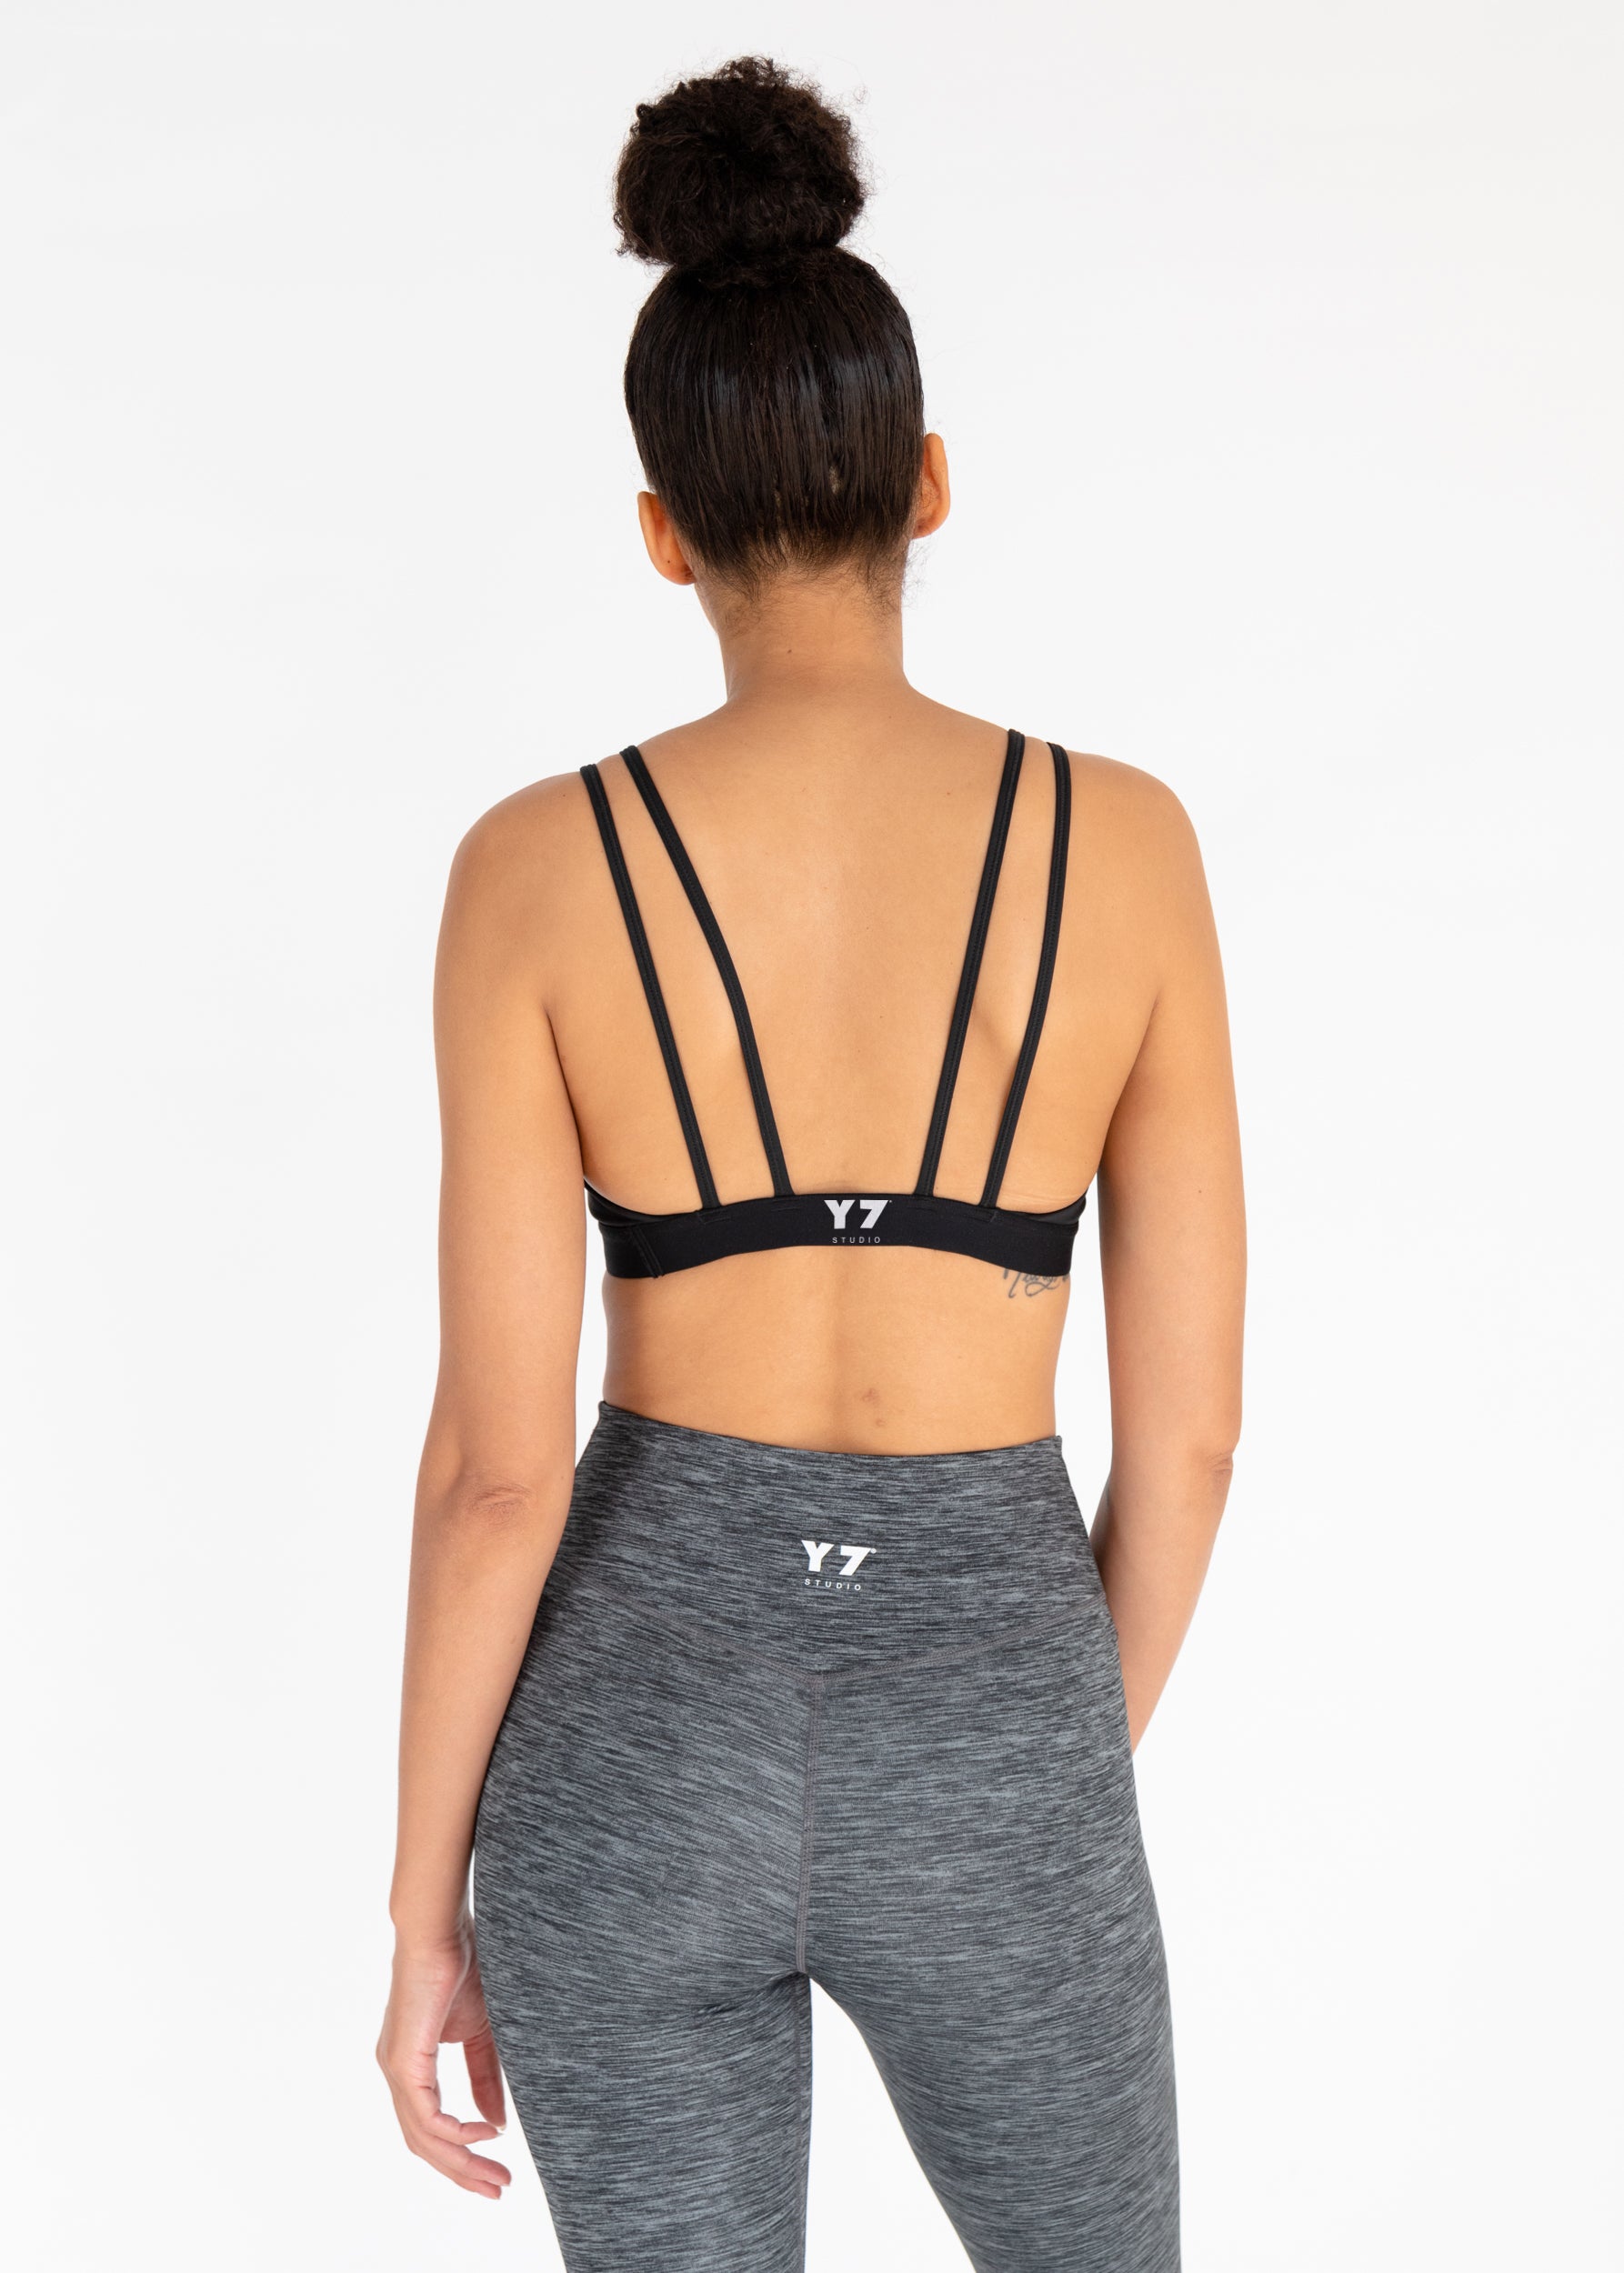 Y7 x Nike Yoga Bra – Y7 Studio